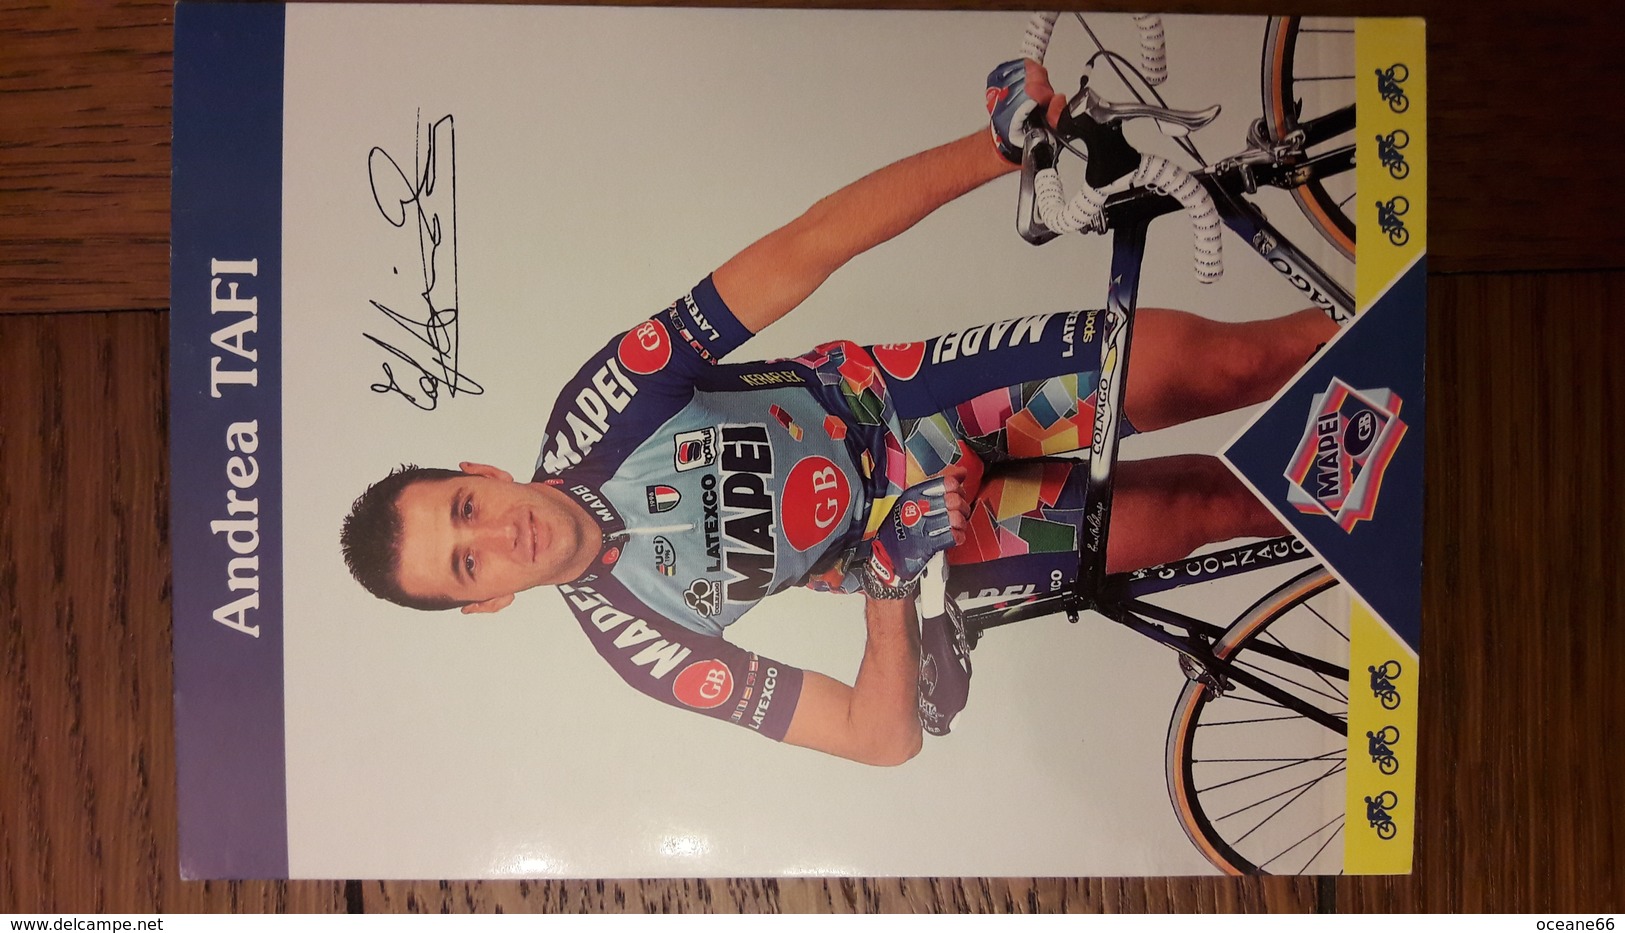 ANdrea TAFI Mapei 1997 - Cyclisme